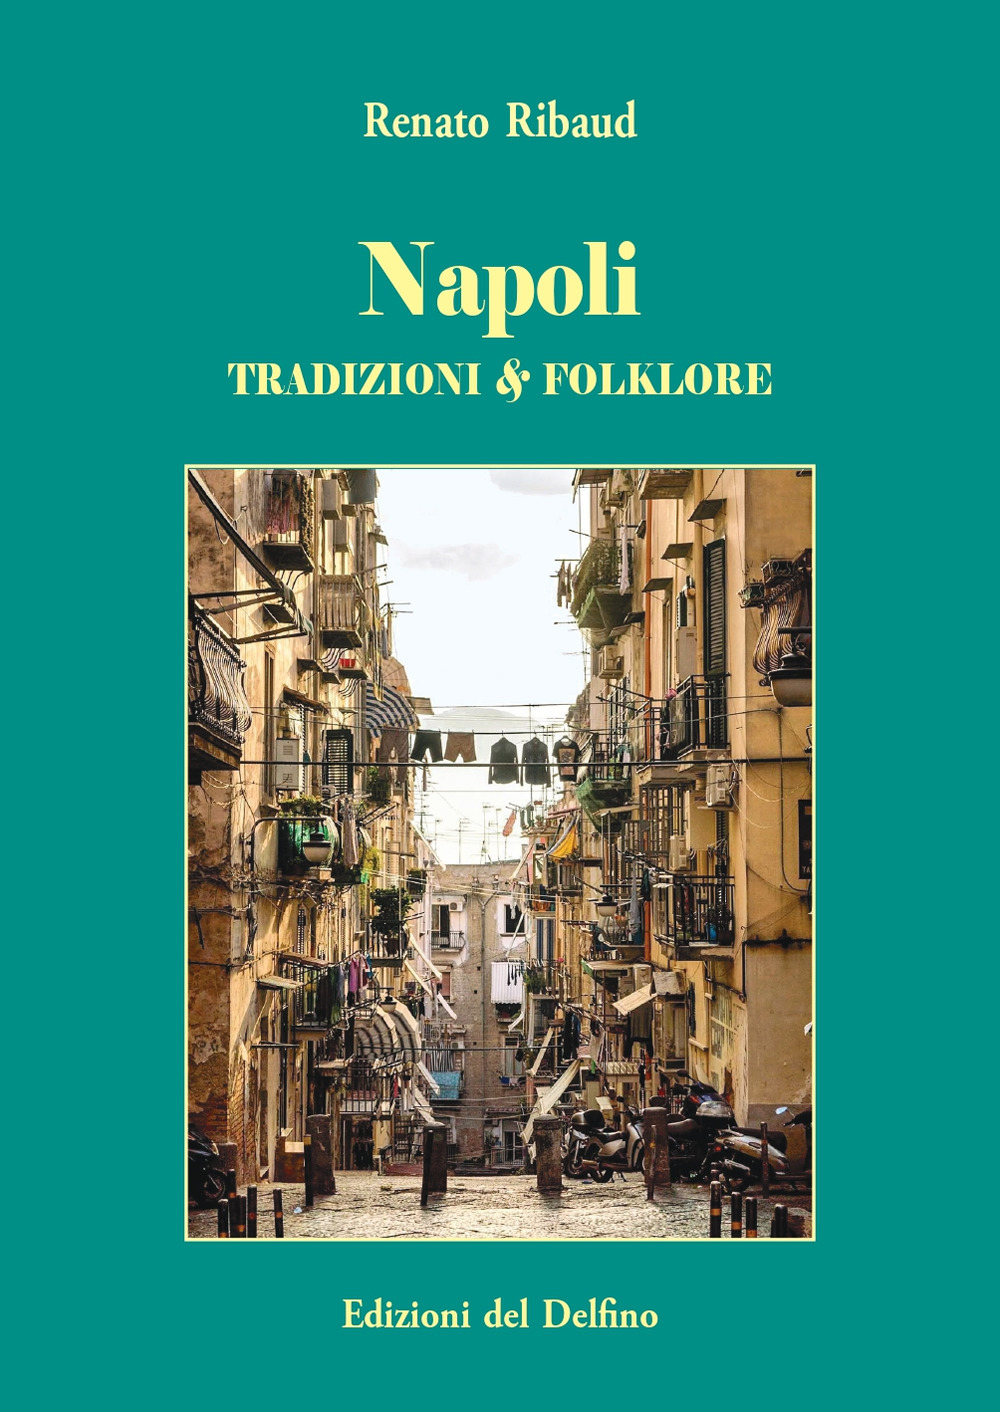 Libri Renato Ribaud - Napoli. Tradizione & Folklore NUOVO SIGILLATO, EDIZIONE DEL 24/10/2019 SUBITO DISPONIBILE